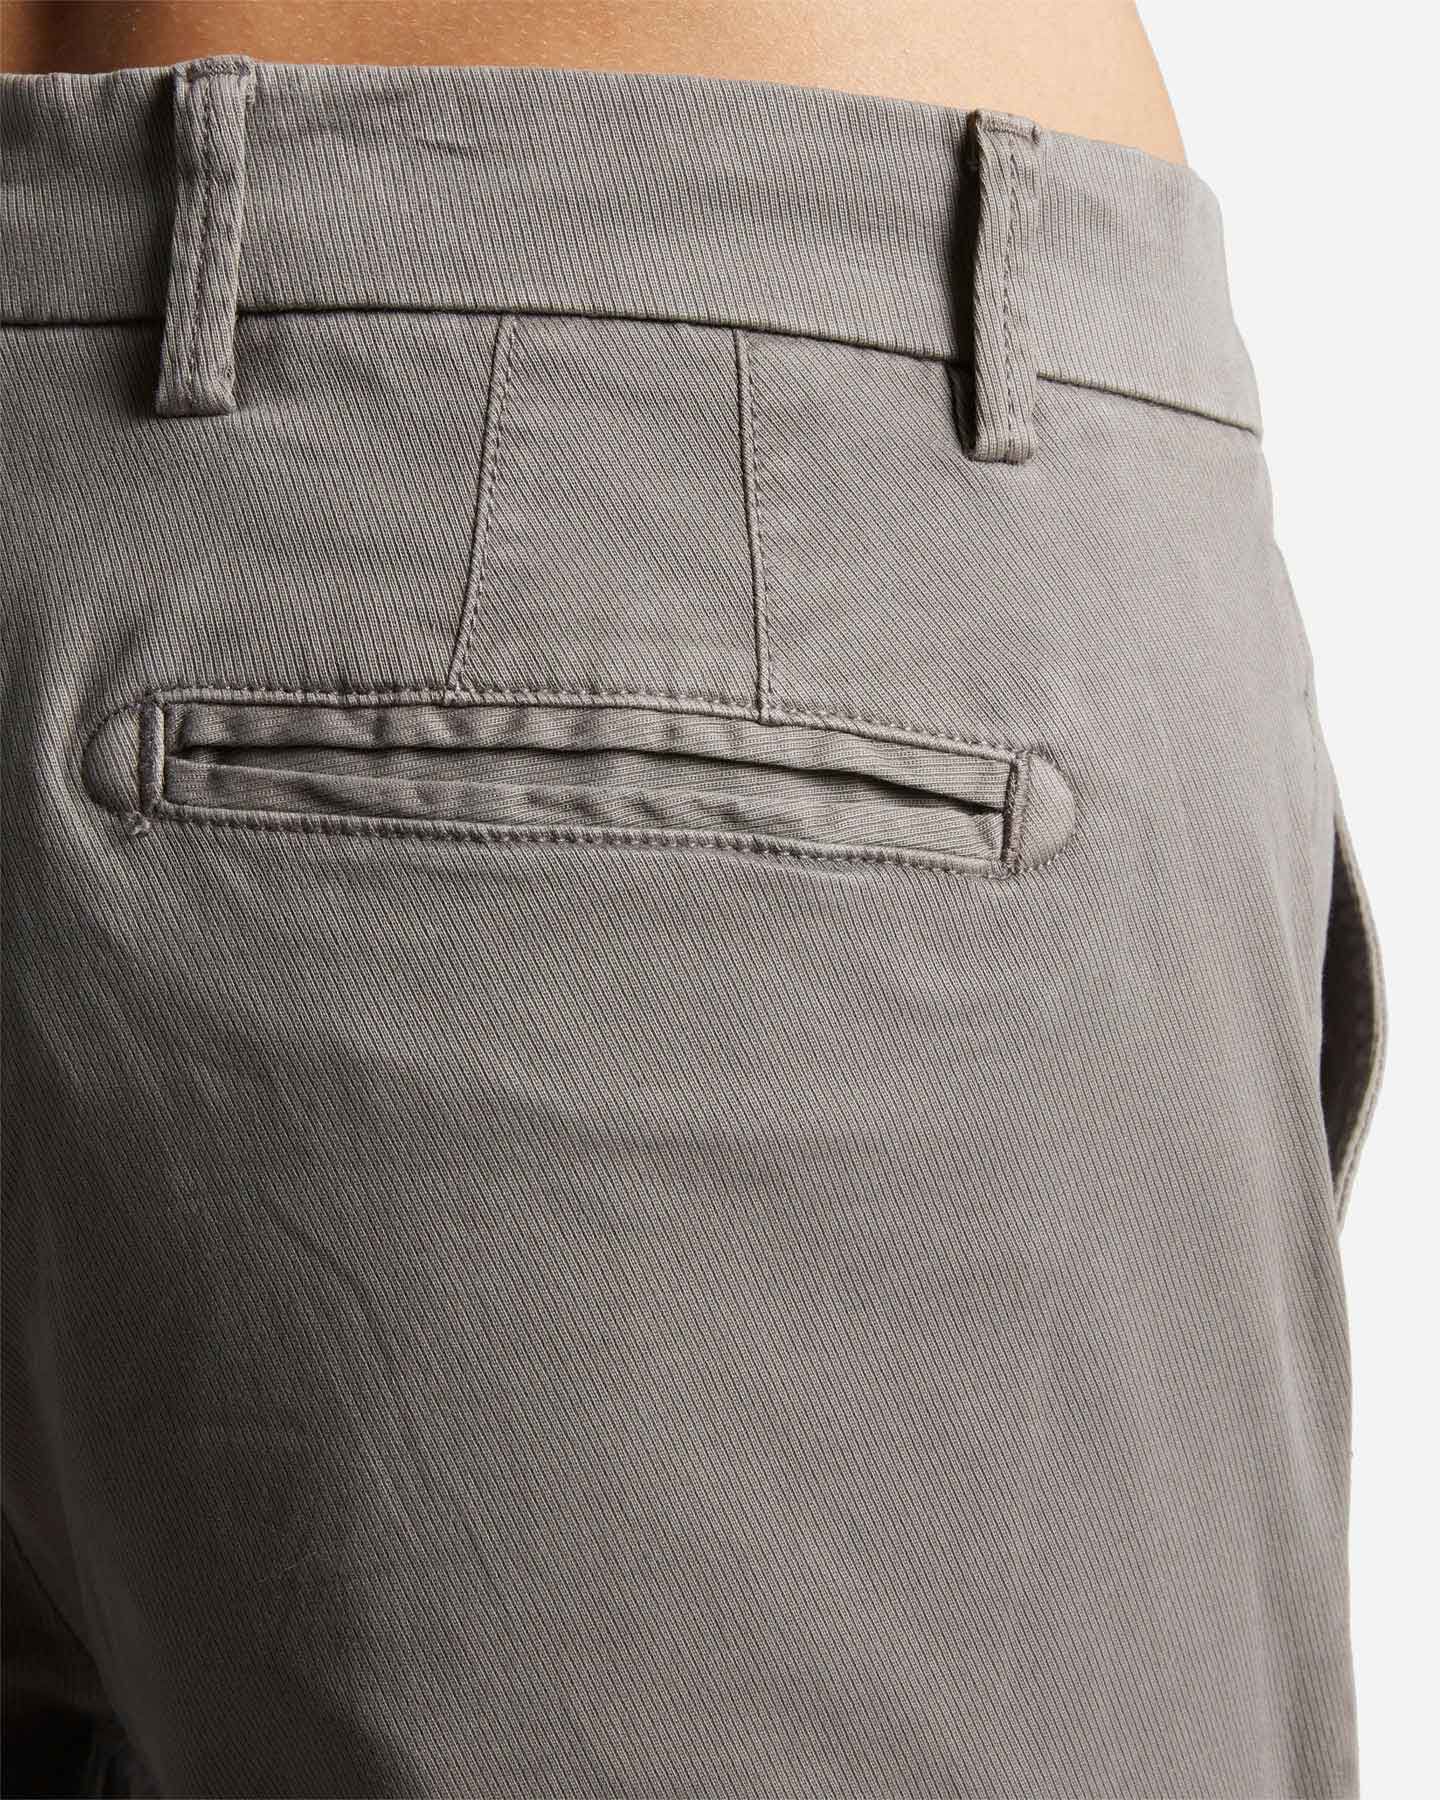  Pantalone DACK'S URBAN M S4125382|909|48 scatto 3